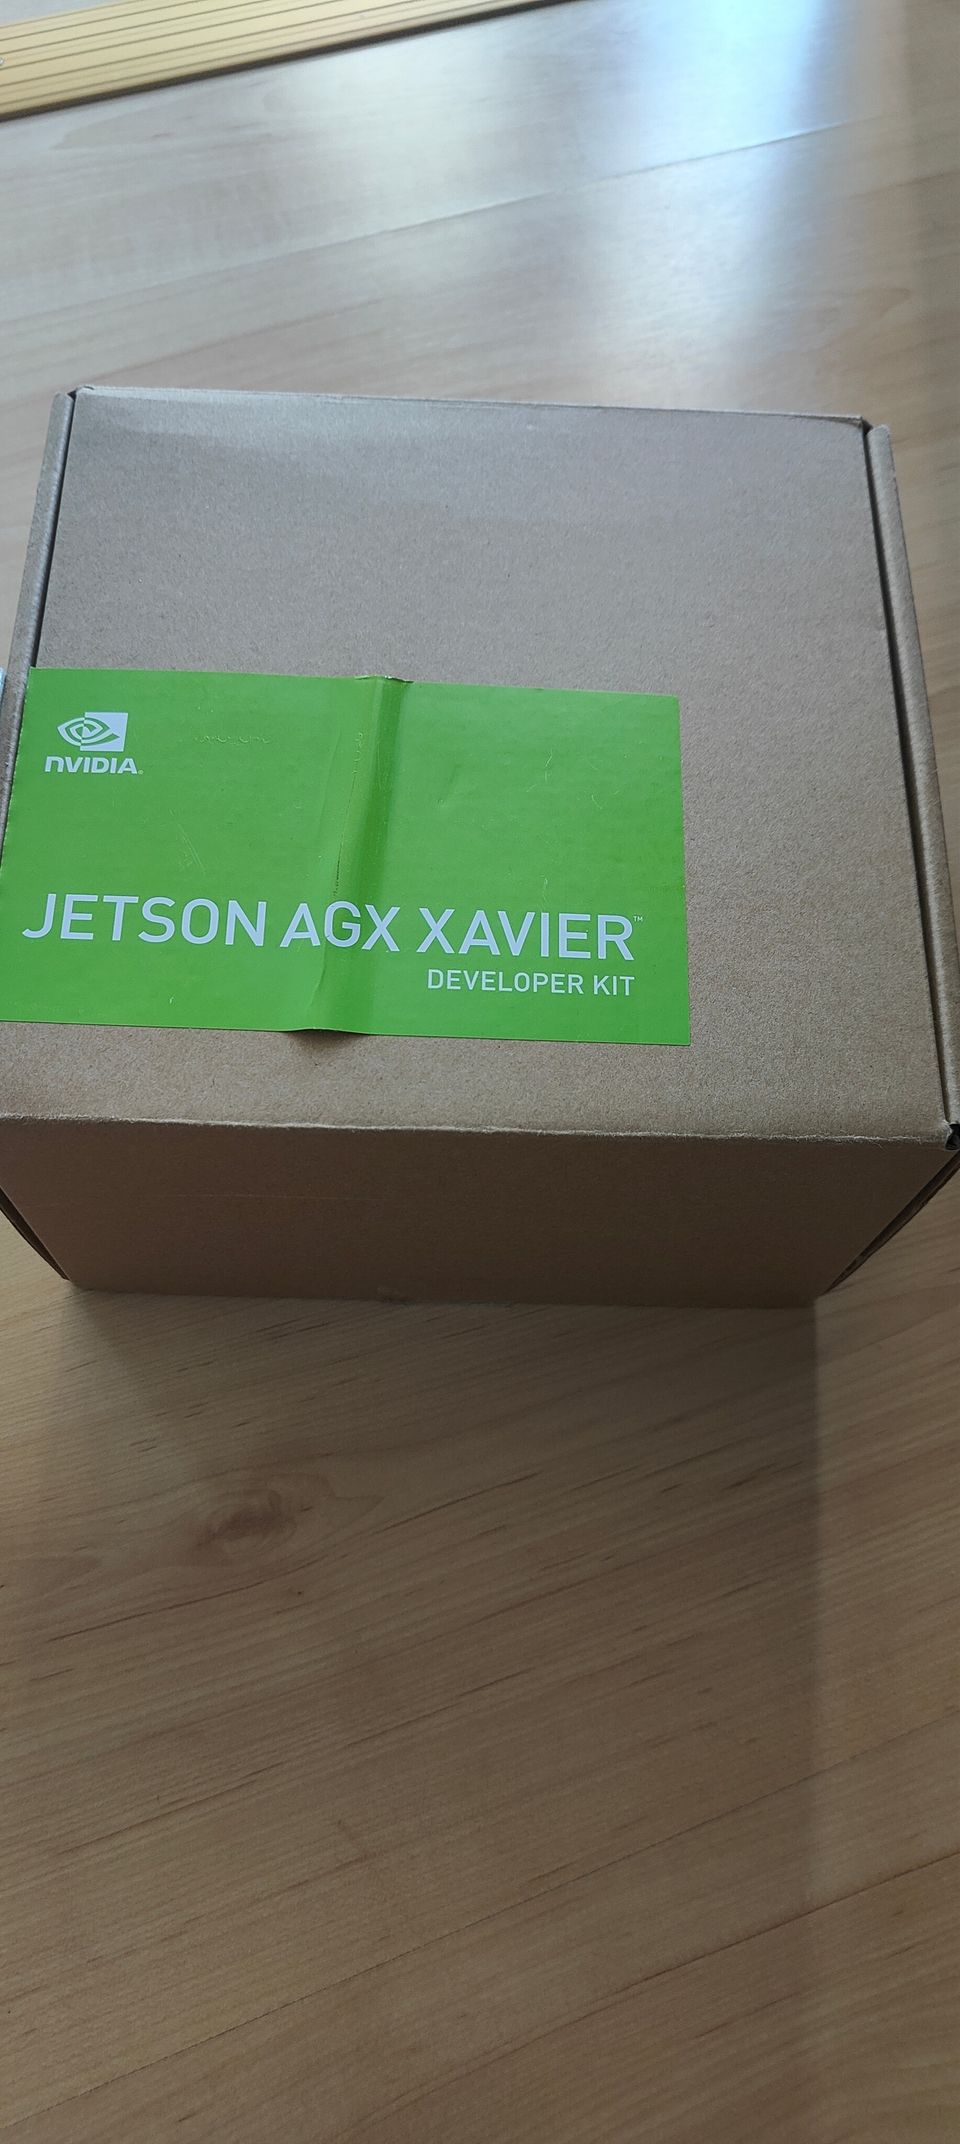 NVIDIA Jetson AGX Xavier Developer Kit